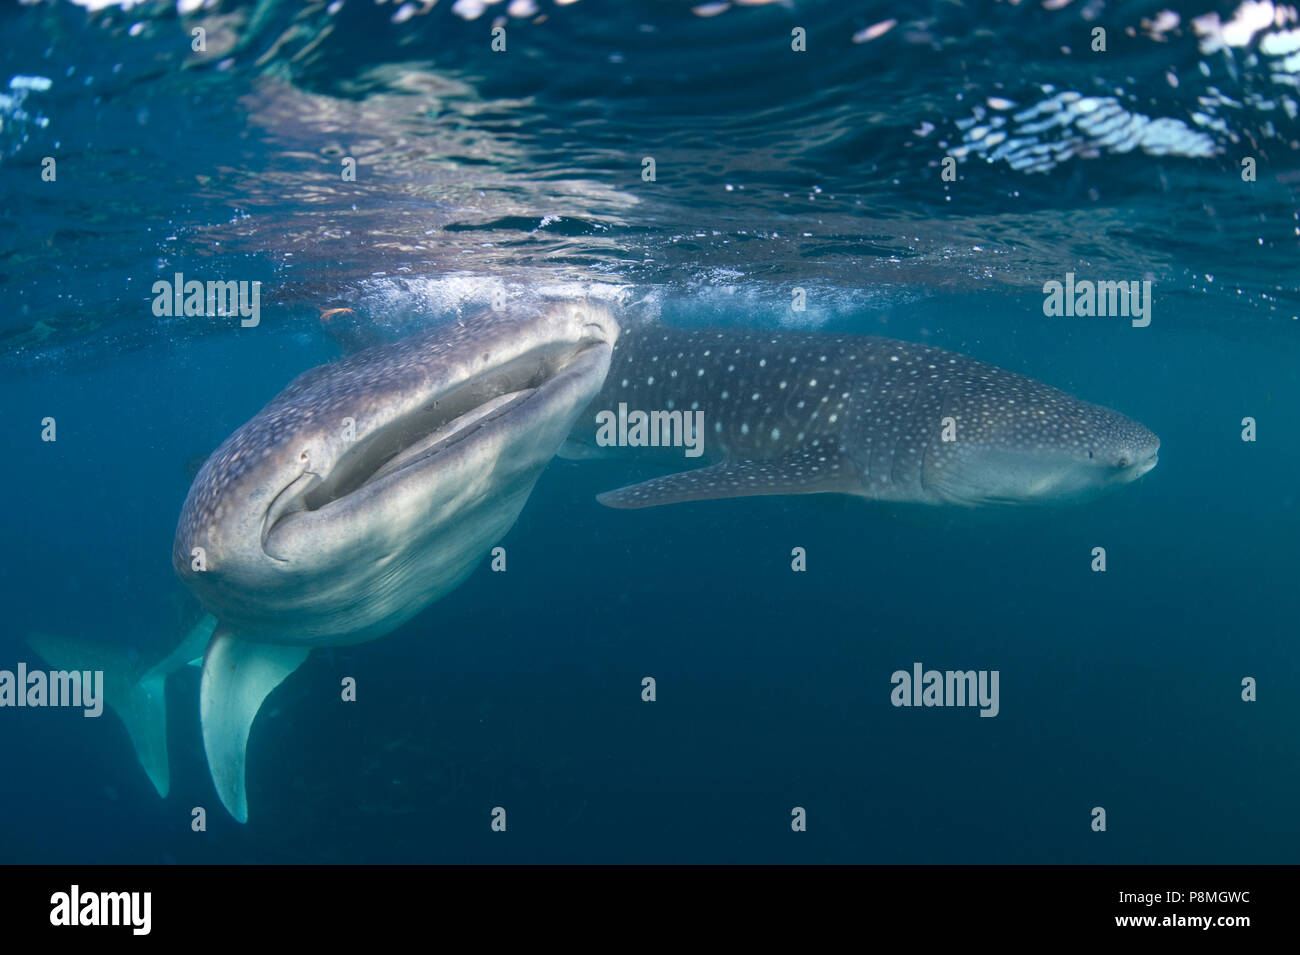 Zwei Walhaie schwimmen dargestellt, die sowohl den gepunkteten Muster der Haut und den breiten Mund. Walhaie sind eine bedrohte Art Stockfoto